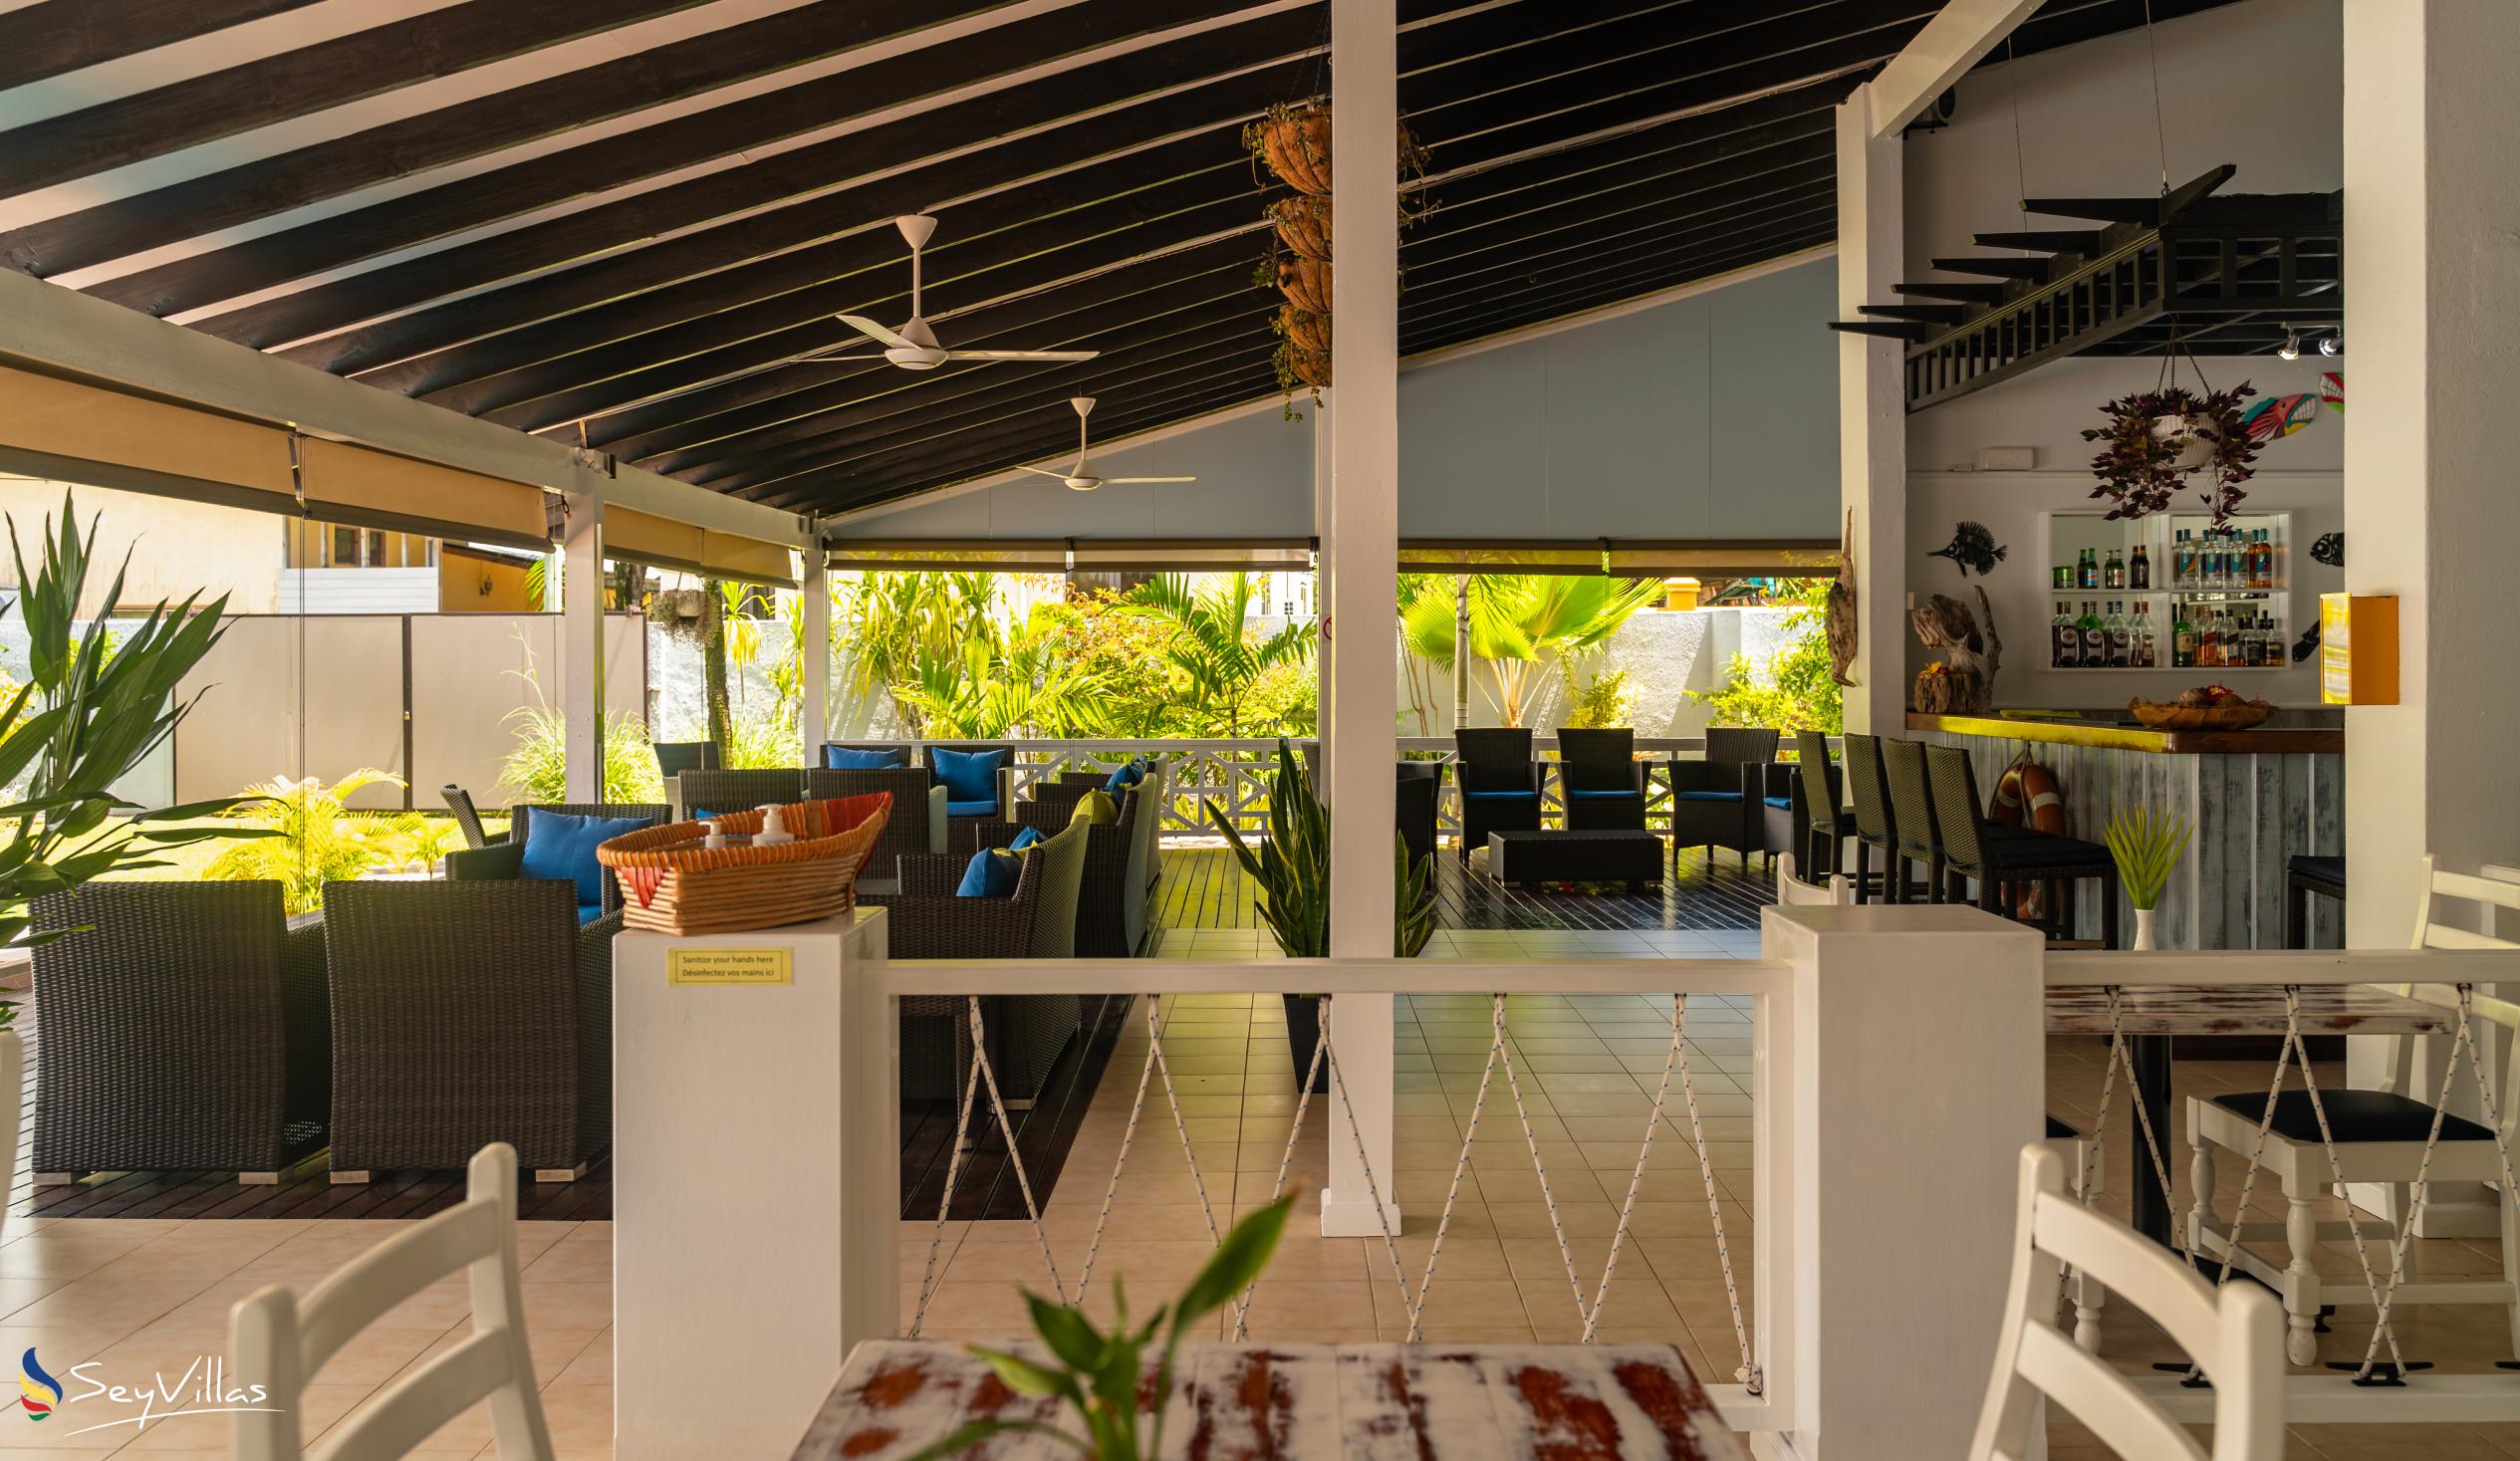 Photo 46: Hotel La Roussette - Indoor area - Mahé (Seychelles)